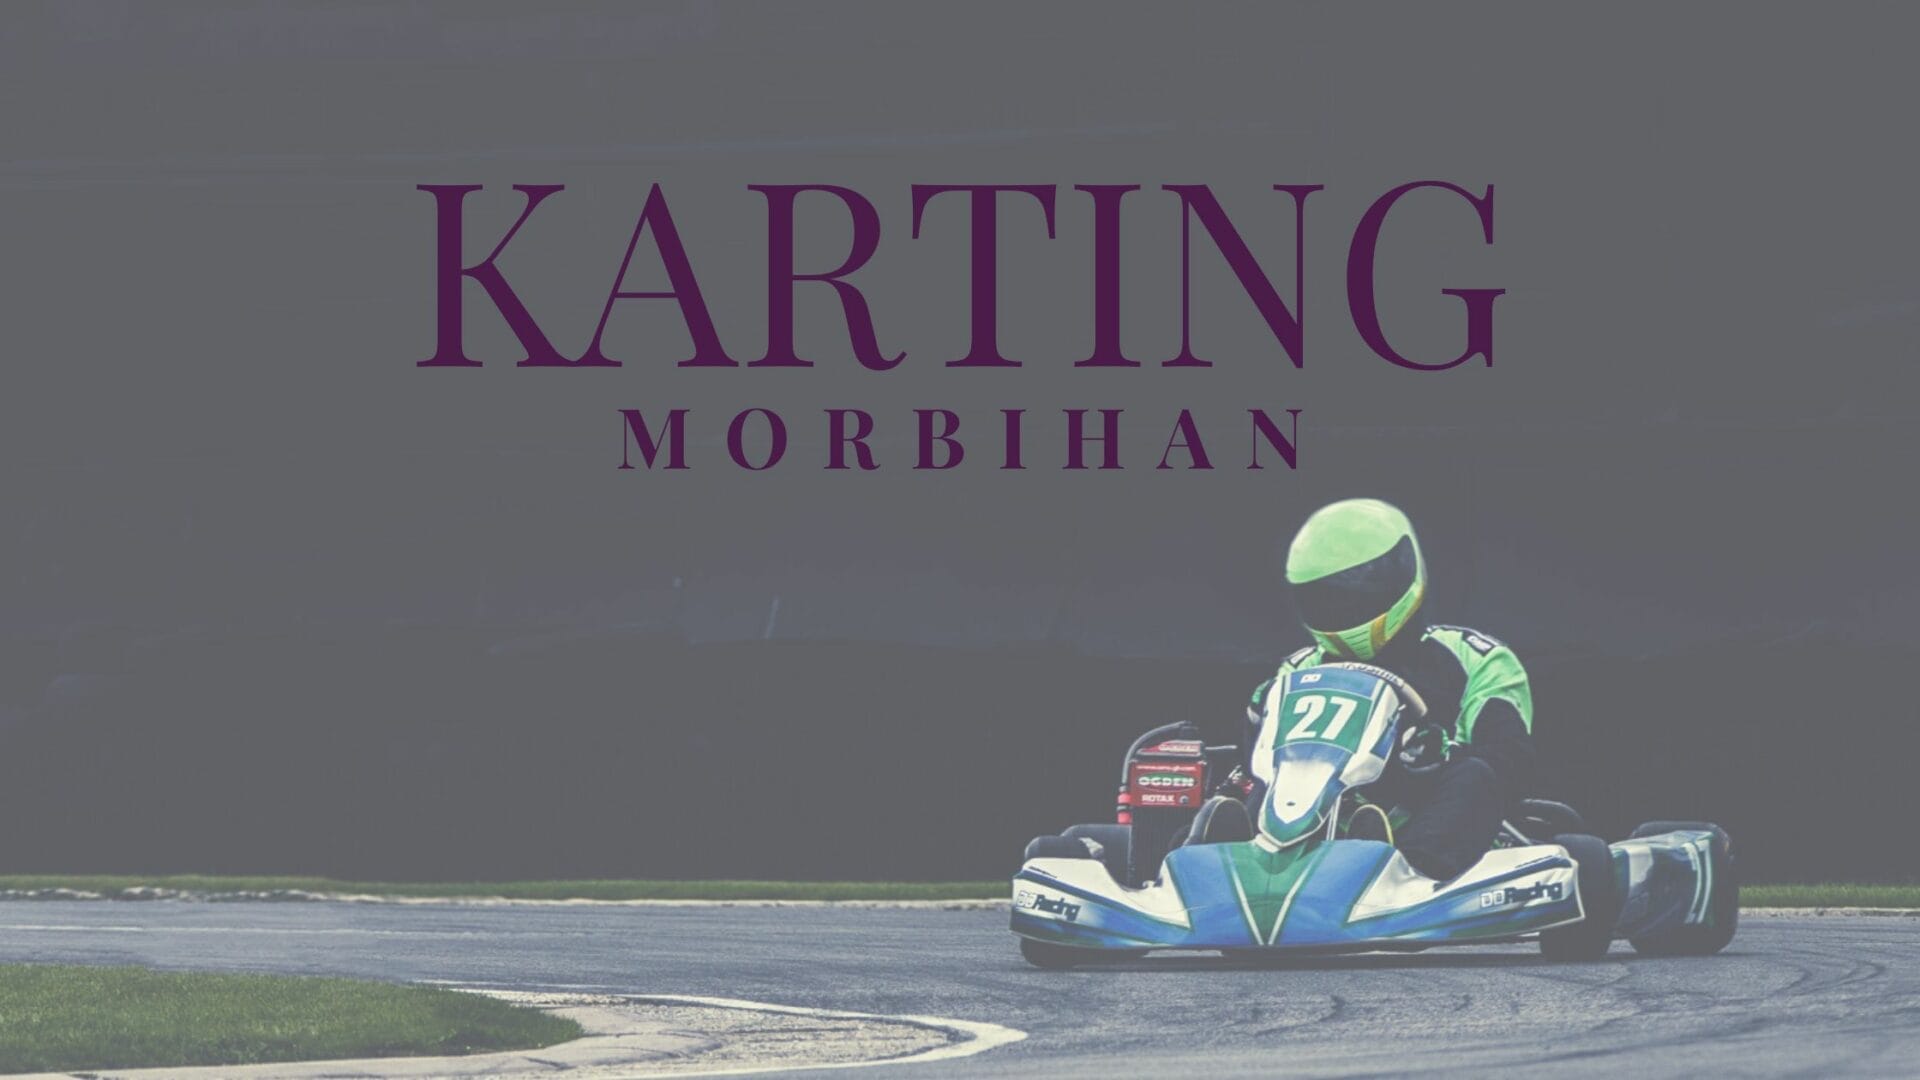 Les circuits de karting dans le Morbihan